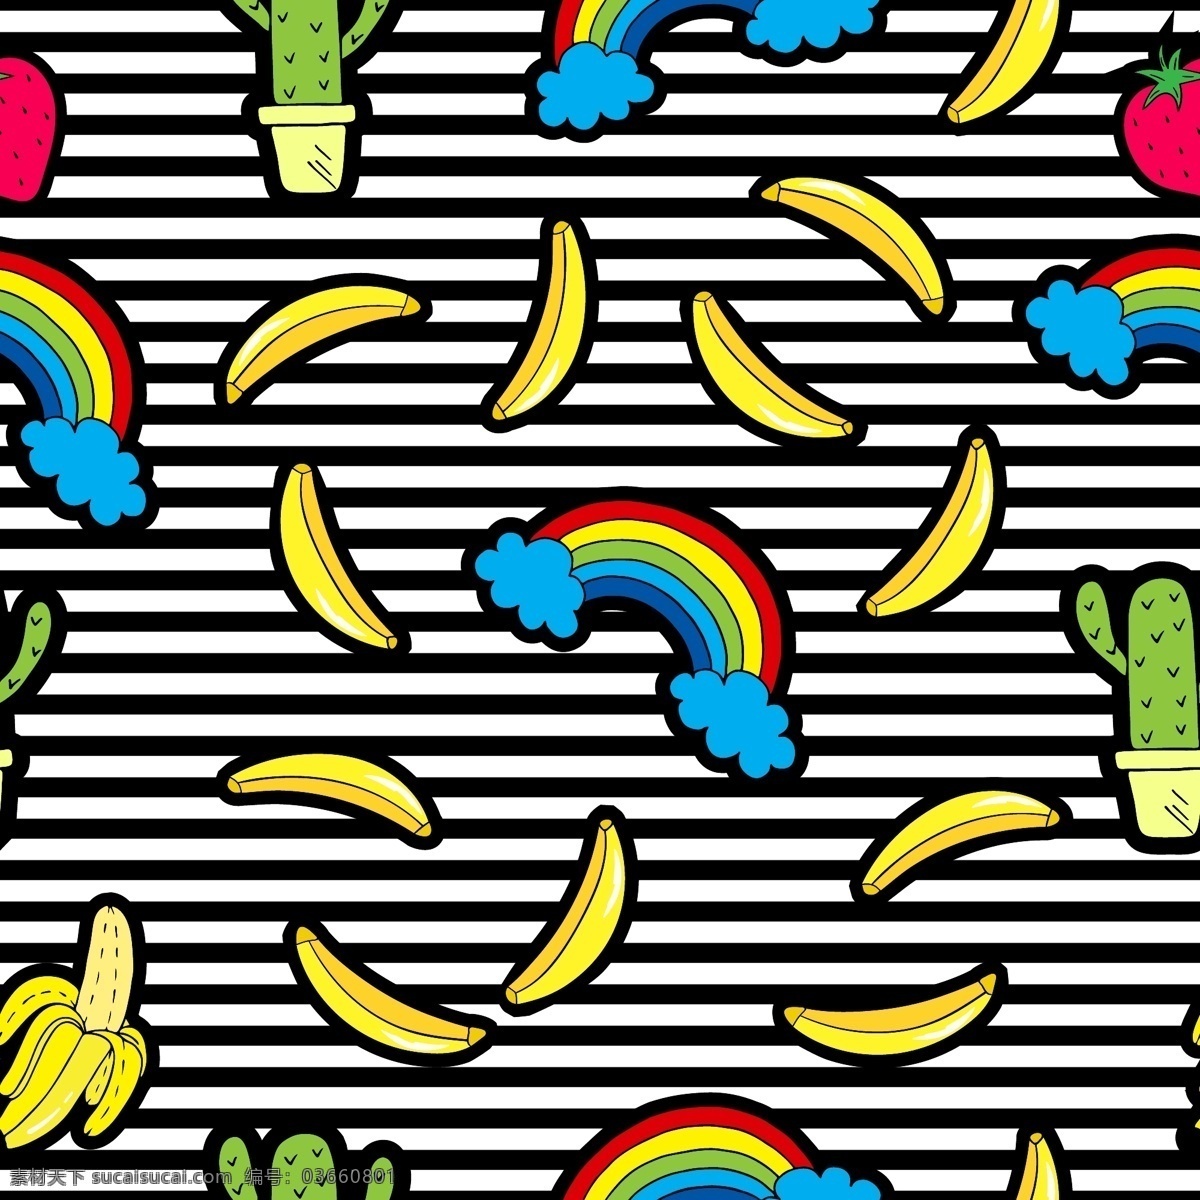 香蕉 彩虹 潮流 背景 填充 创意 矢量素材 背景素材 设计素材